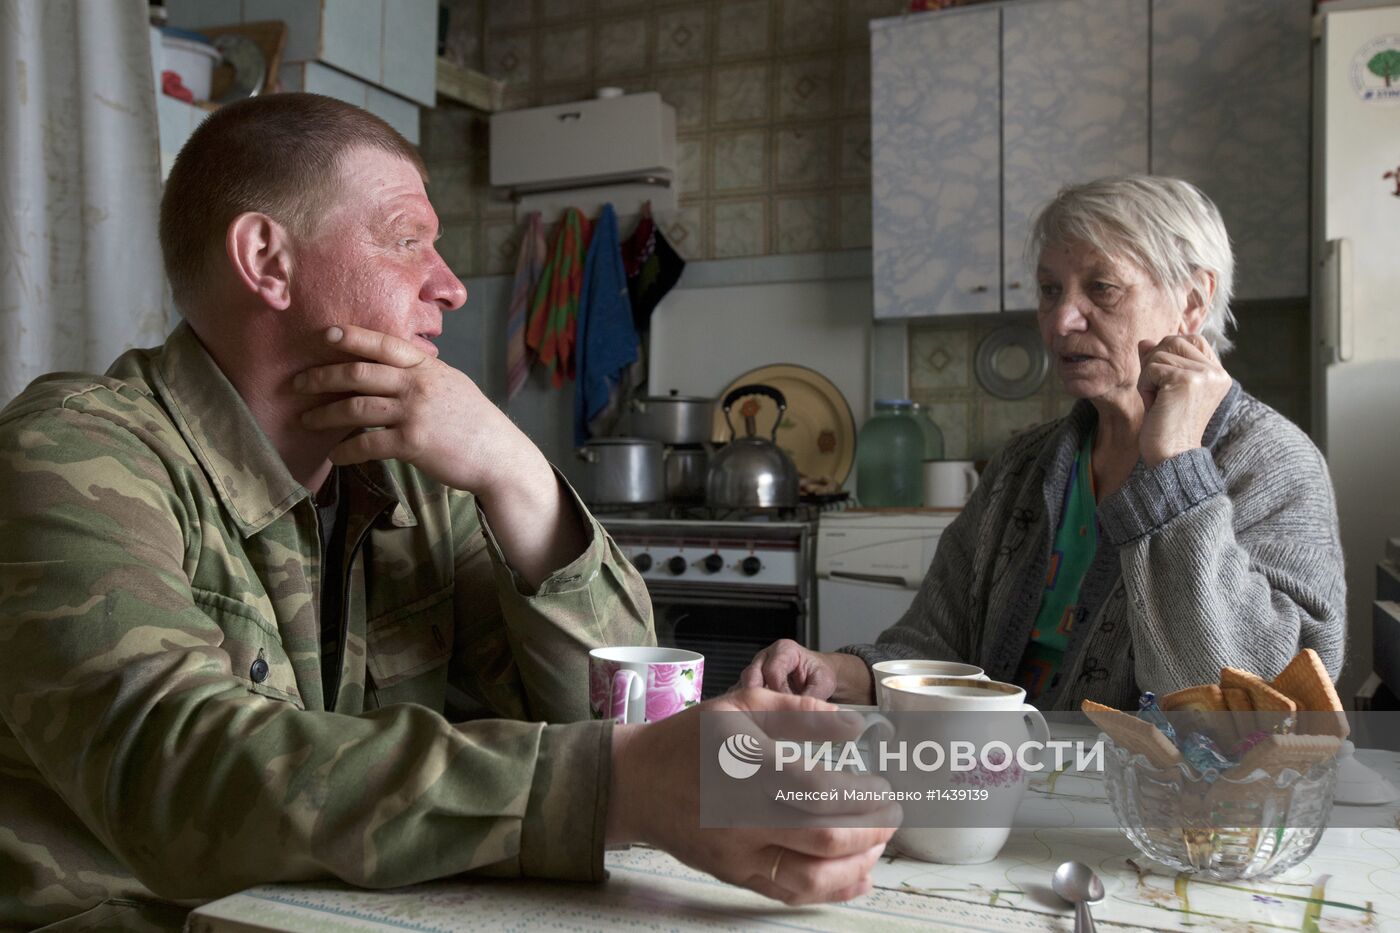 Работа службы социальной поддержки в селе Екатерининское